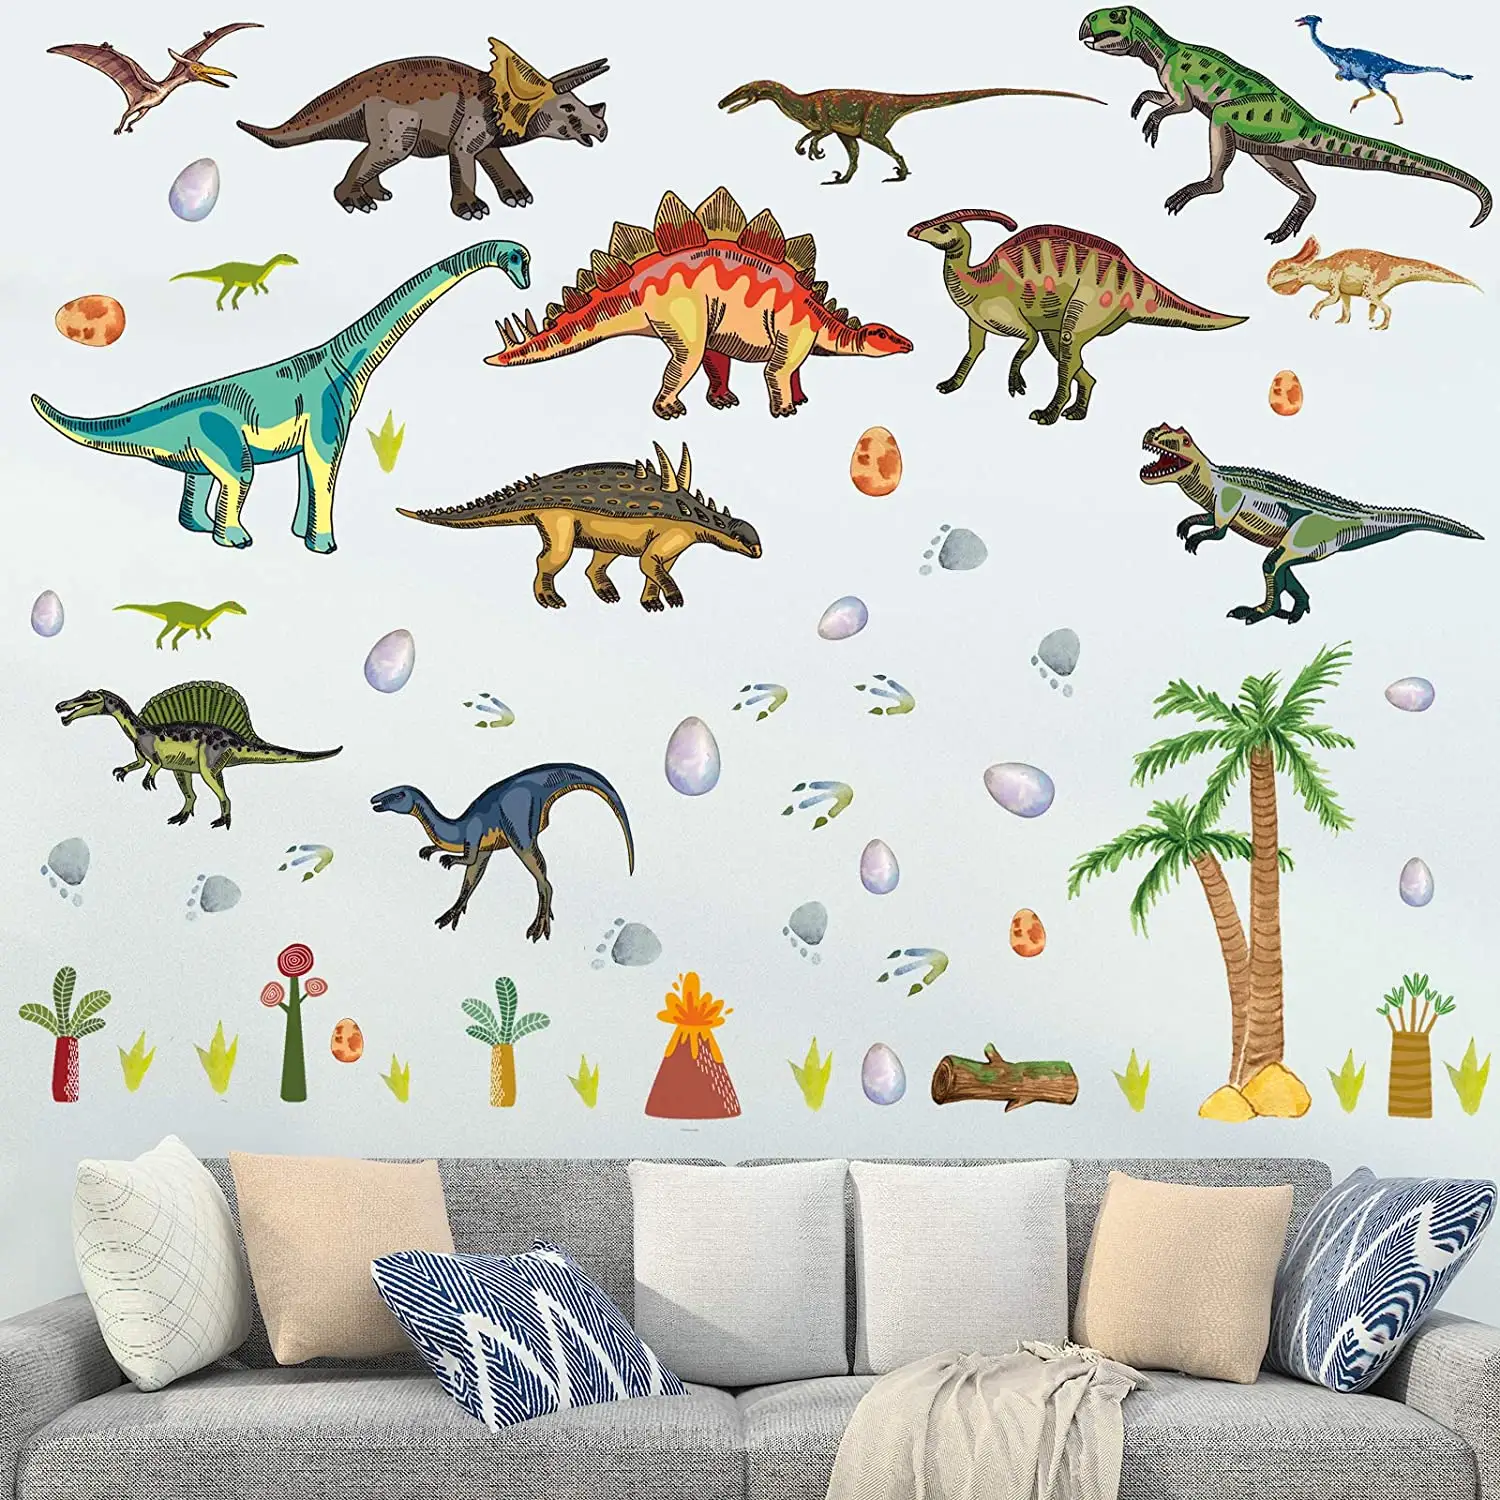 공룡 벽 데칼 소년 방 수채화 공룡 벽 스티커 어린이 침실 대형 디노 벽 장식 보육